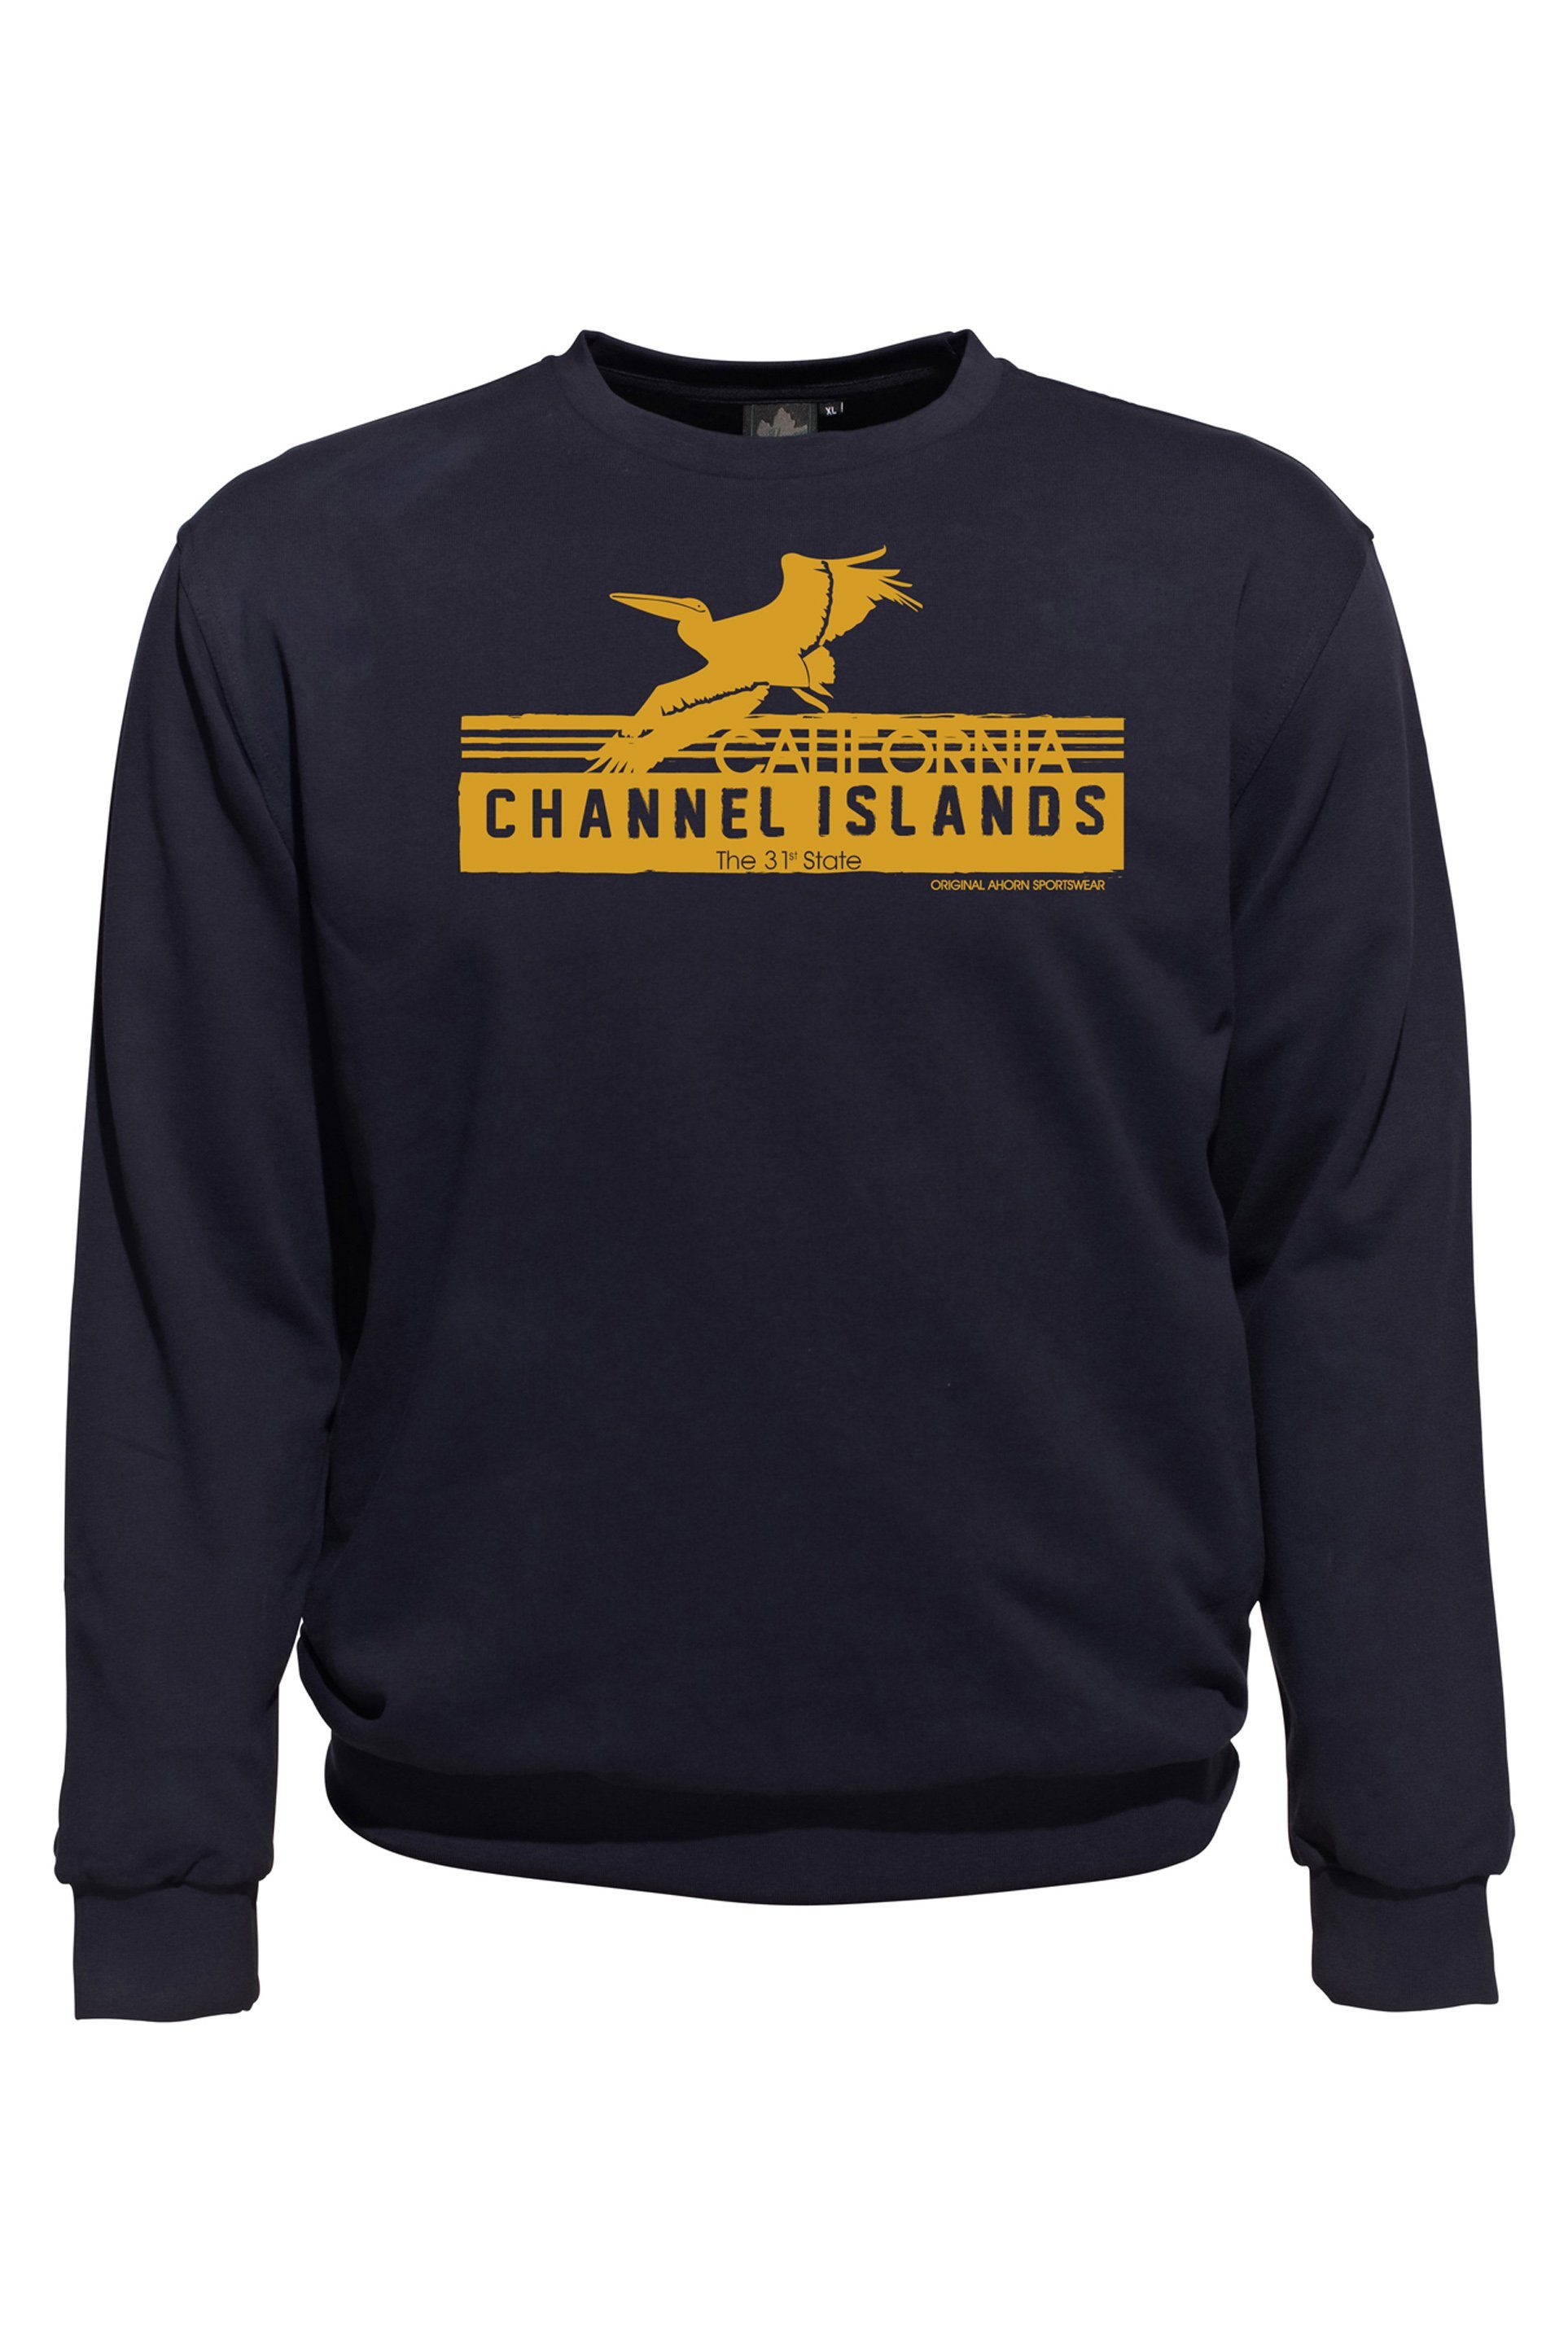 AHORN SPORTSWEAR Sweatshirt CHANNEL ISLANDS Ahorn Sportswear Herren von modischem Kuscheliges mit Frontprint, für Sweatshirt